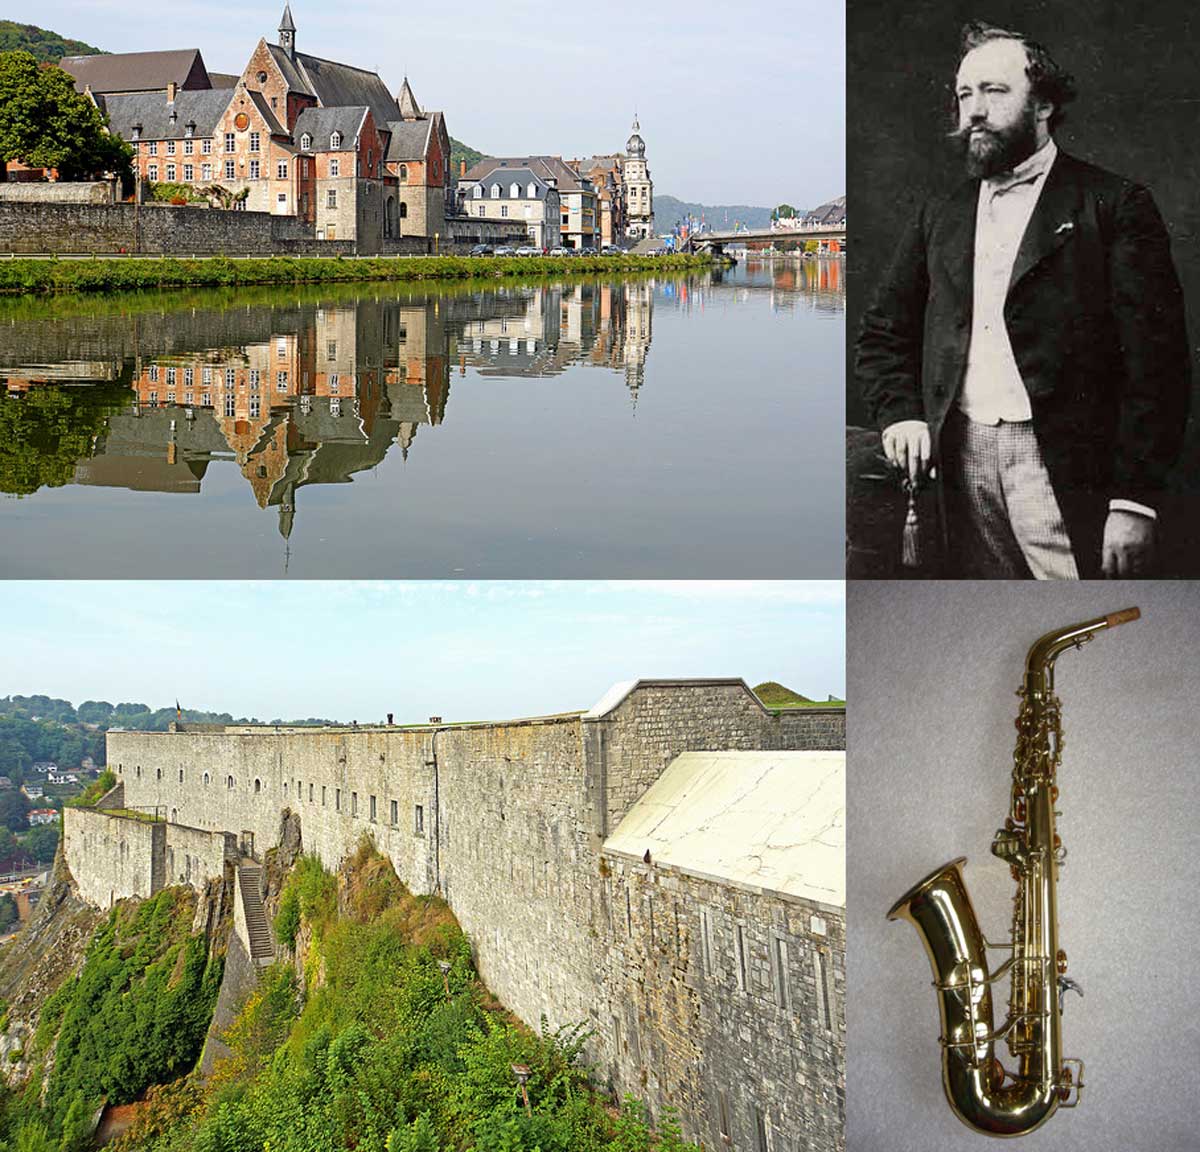 Fakta: Adolphe Sax, som uppfann saxofonen, kom från staden Dinant i Belgien